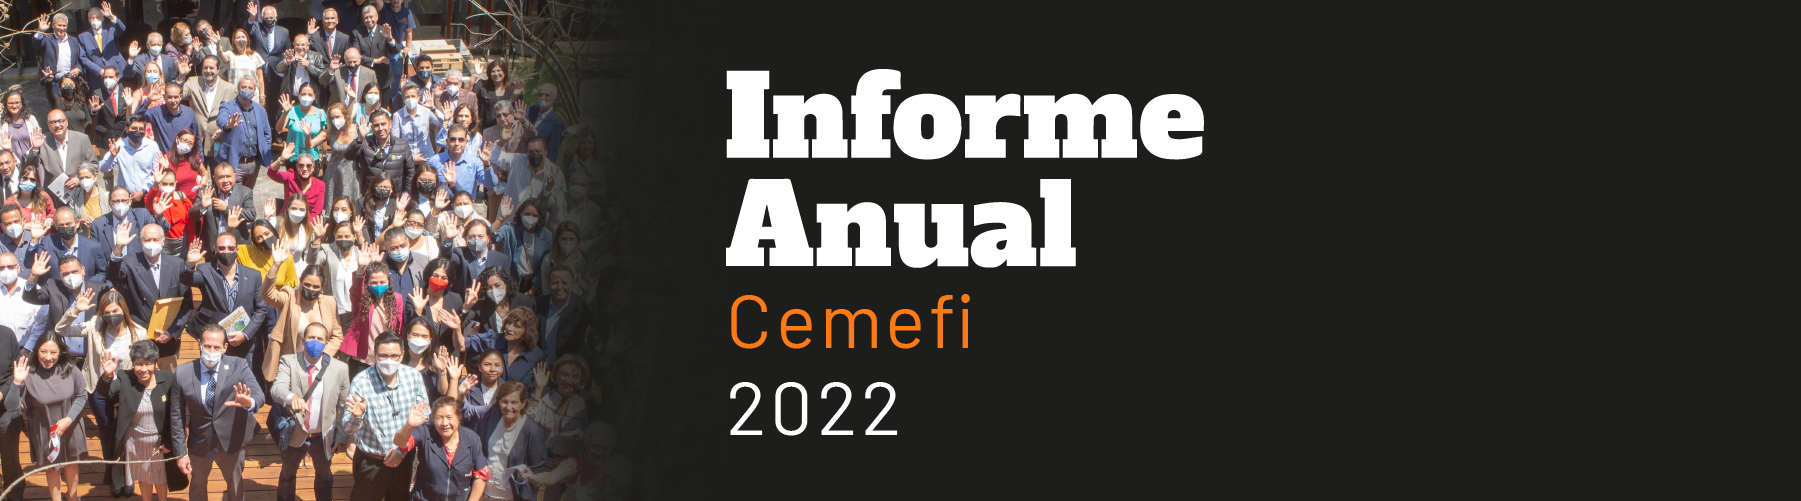 Imagen de personas en Casa Cemefi y texto Informe Anual Cemefi 2022